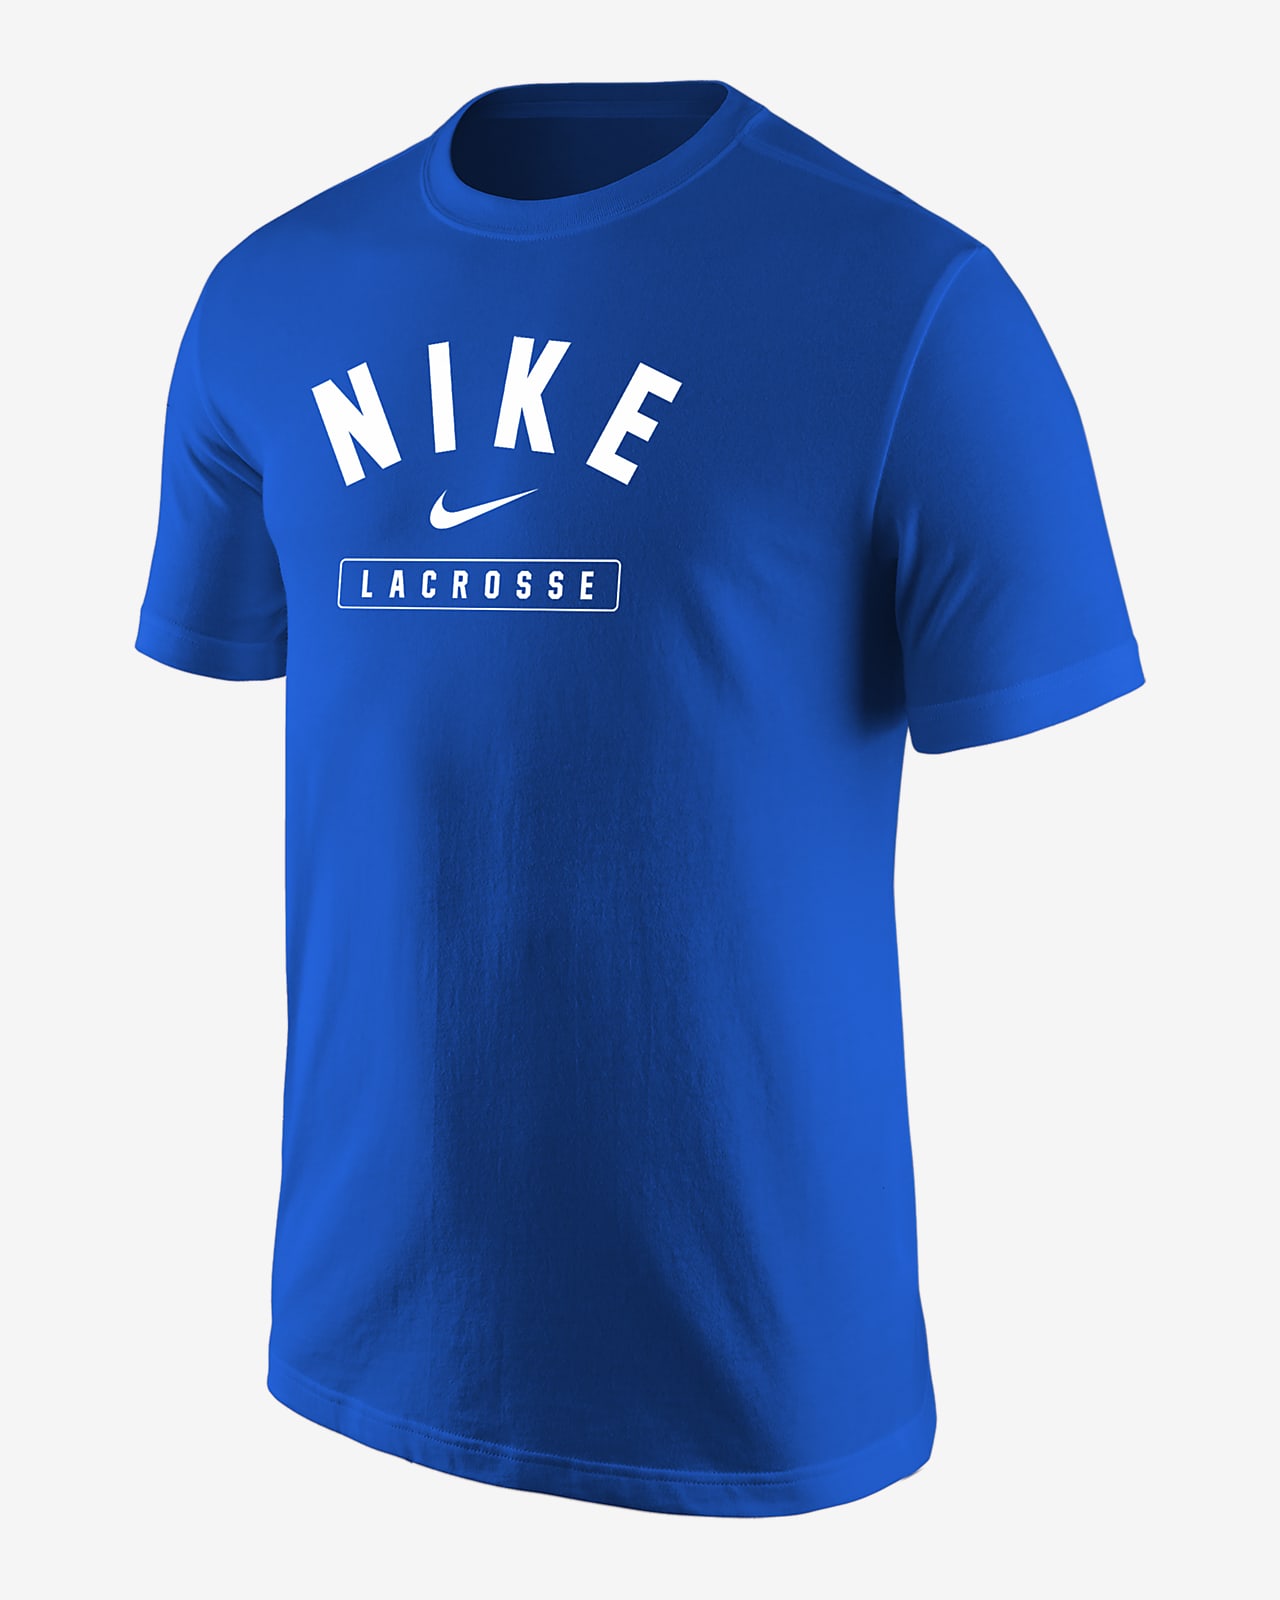 Nike Lacrosse Men's T-Shirt